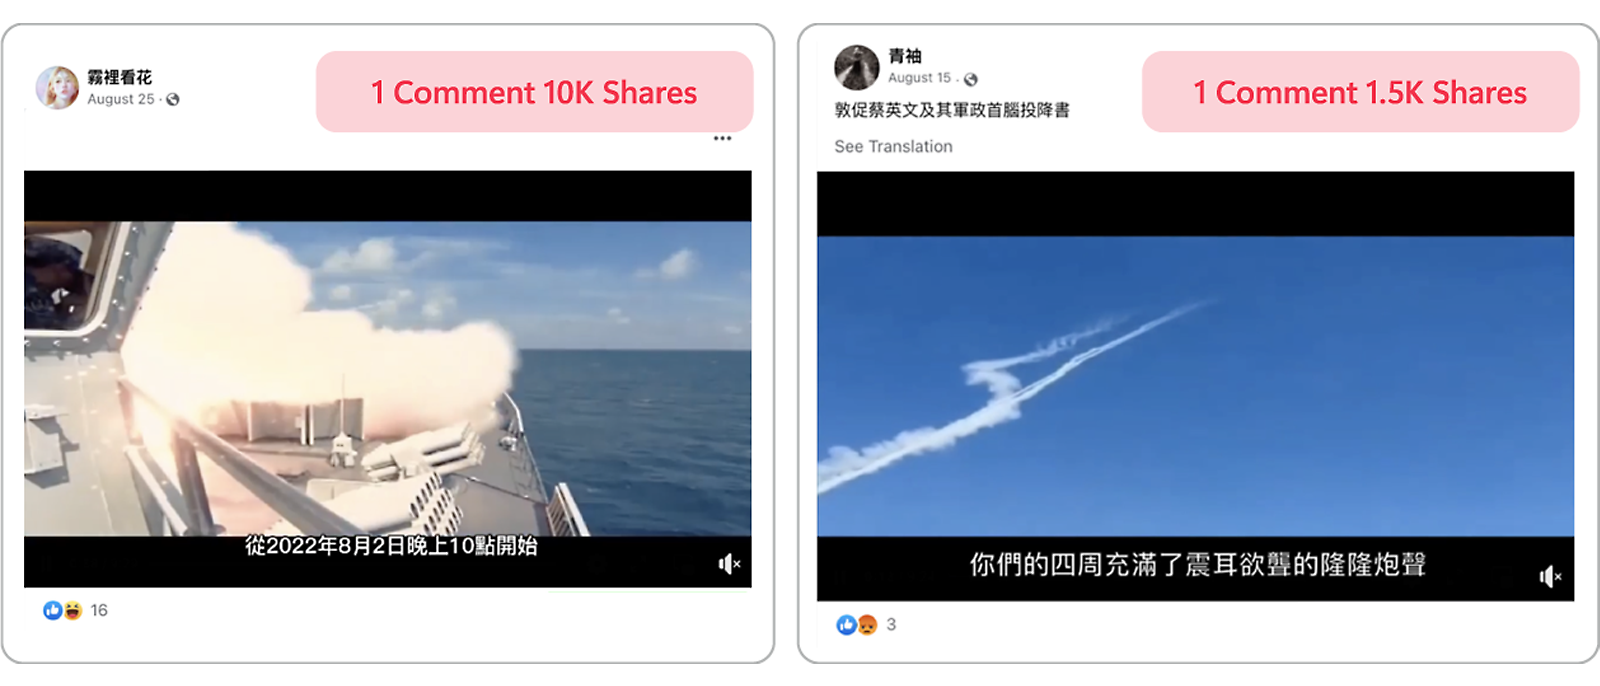 Ejemplos de capturas de pantalla lado a lado de propaganda en vídeo en taiwanés